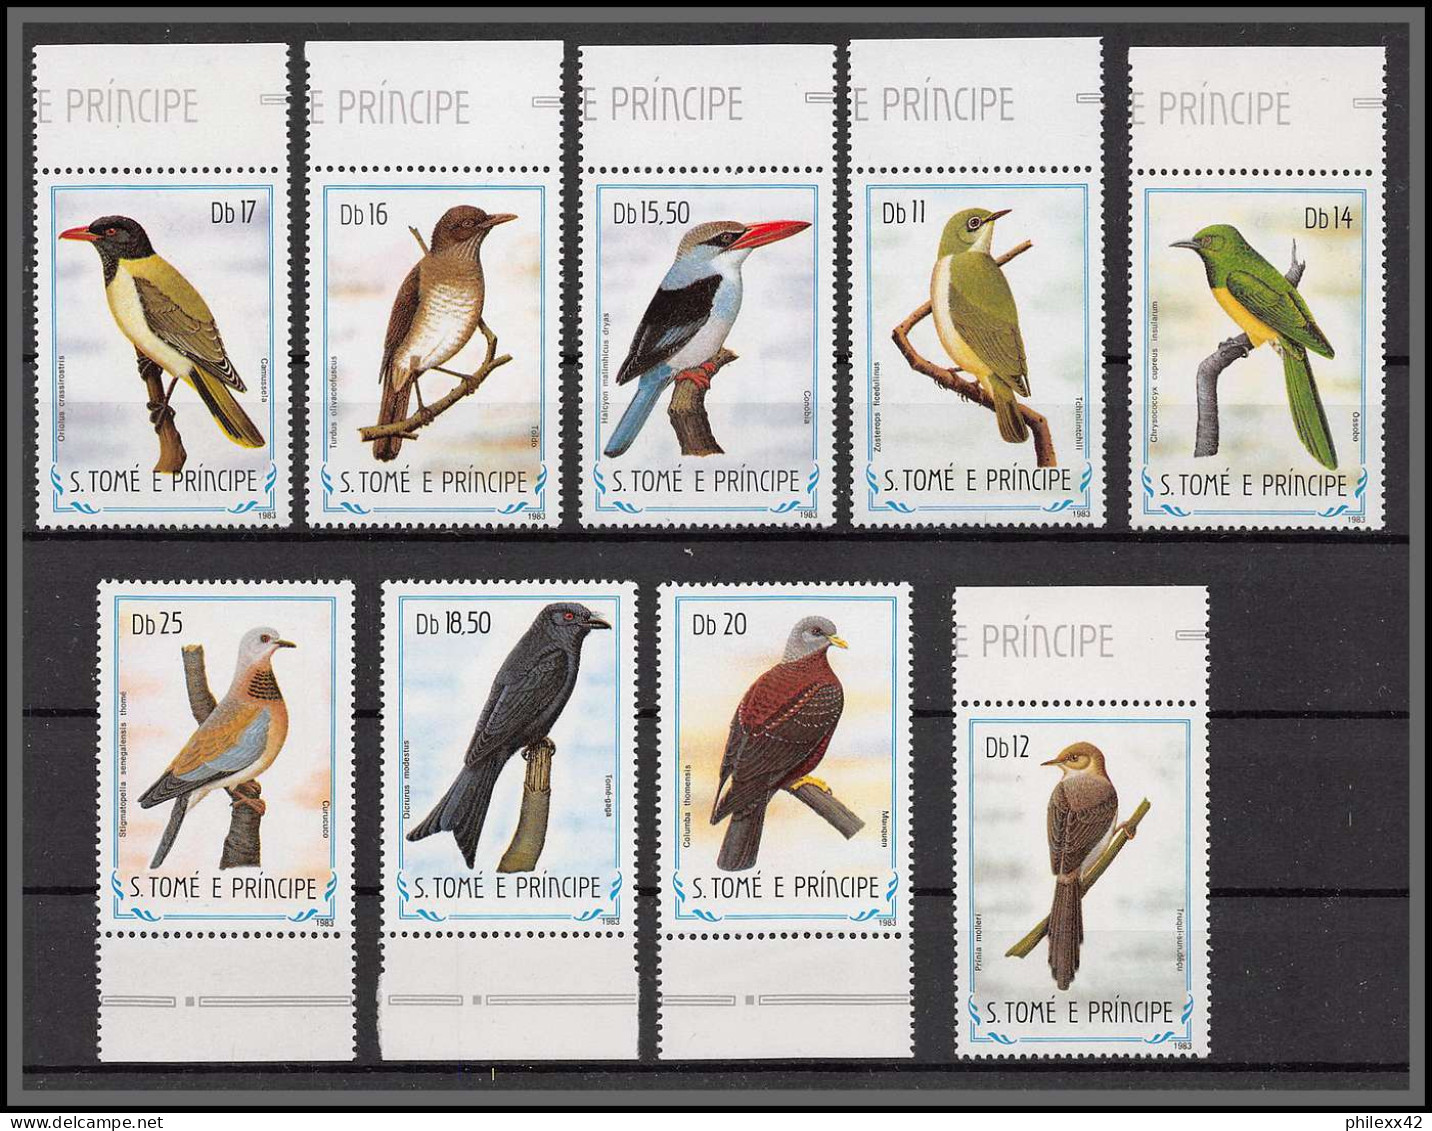 86356 Sao Tome E Principe 1983 Mi N°888/896 Oiseaux (birds) Vogel ** MNH Perroquets 9 Valeurs - Verzamelingen, Voorwerpen & Reeksen